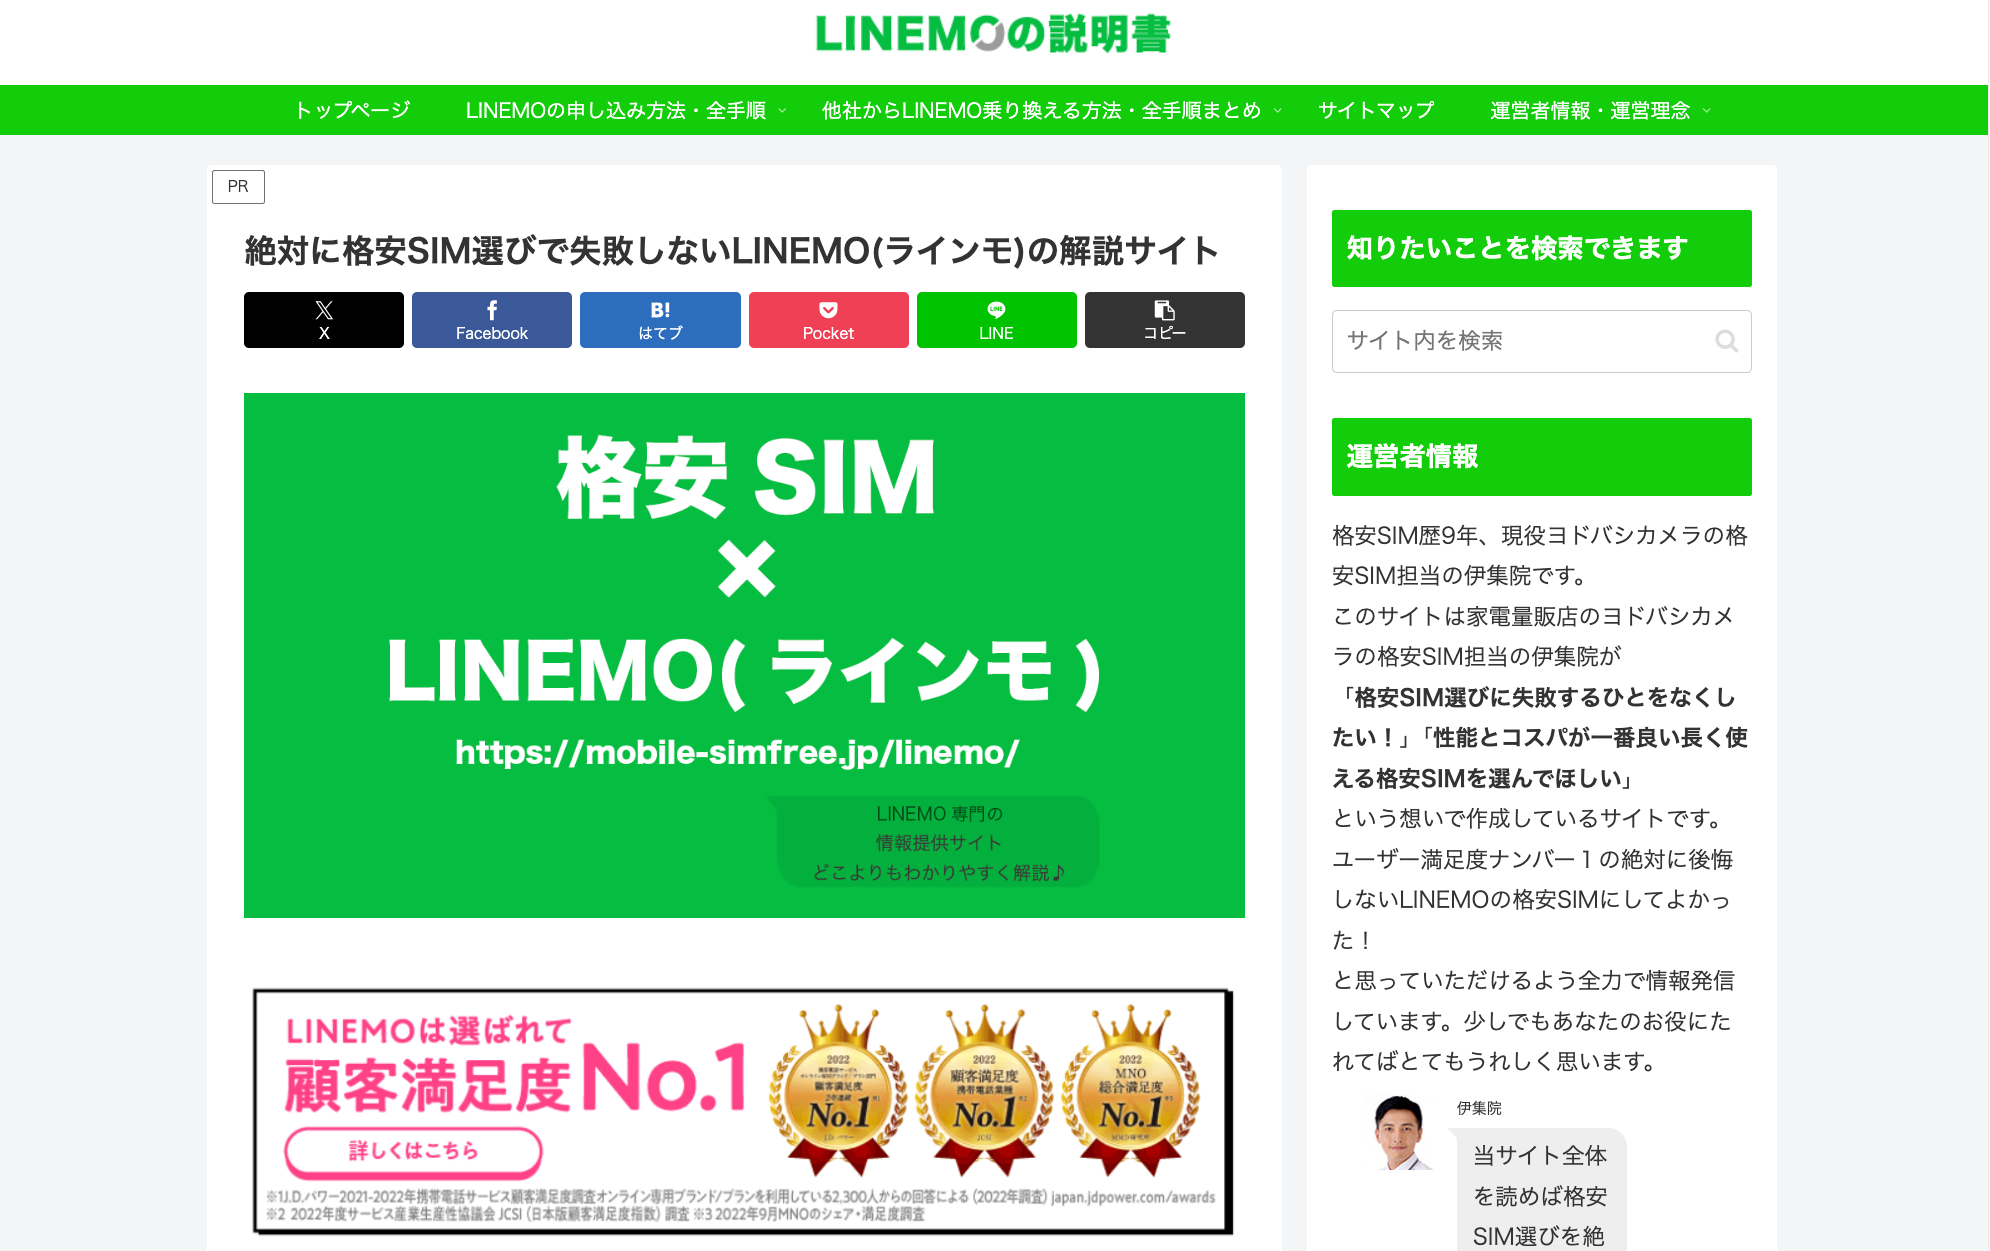 linemo-site WEB MEDIA